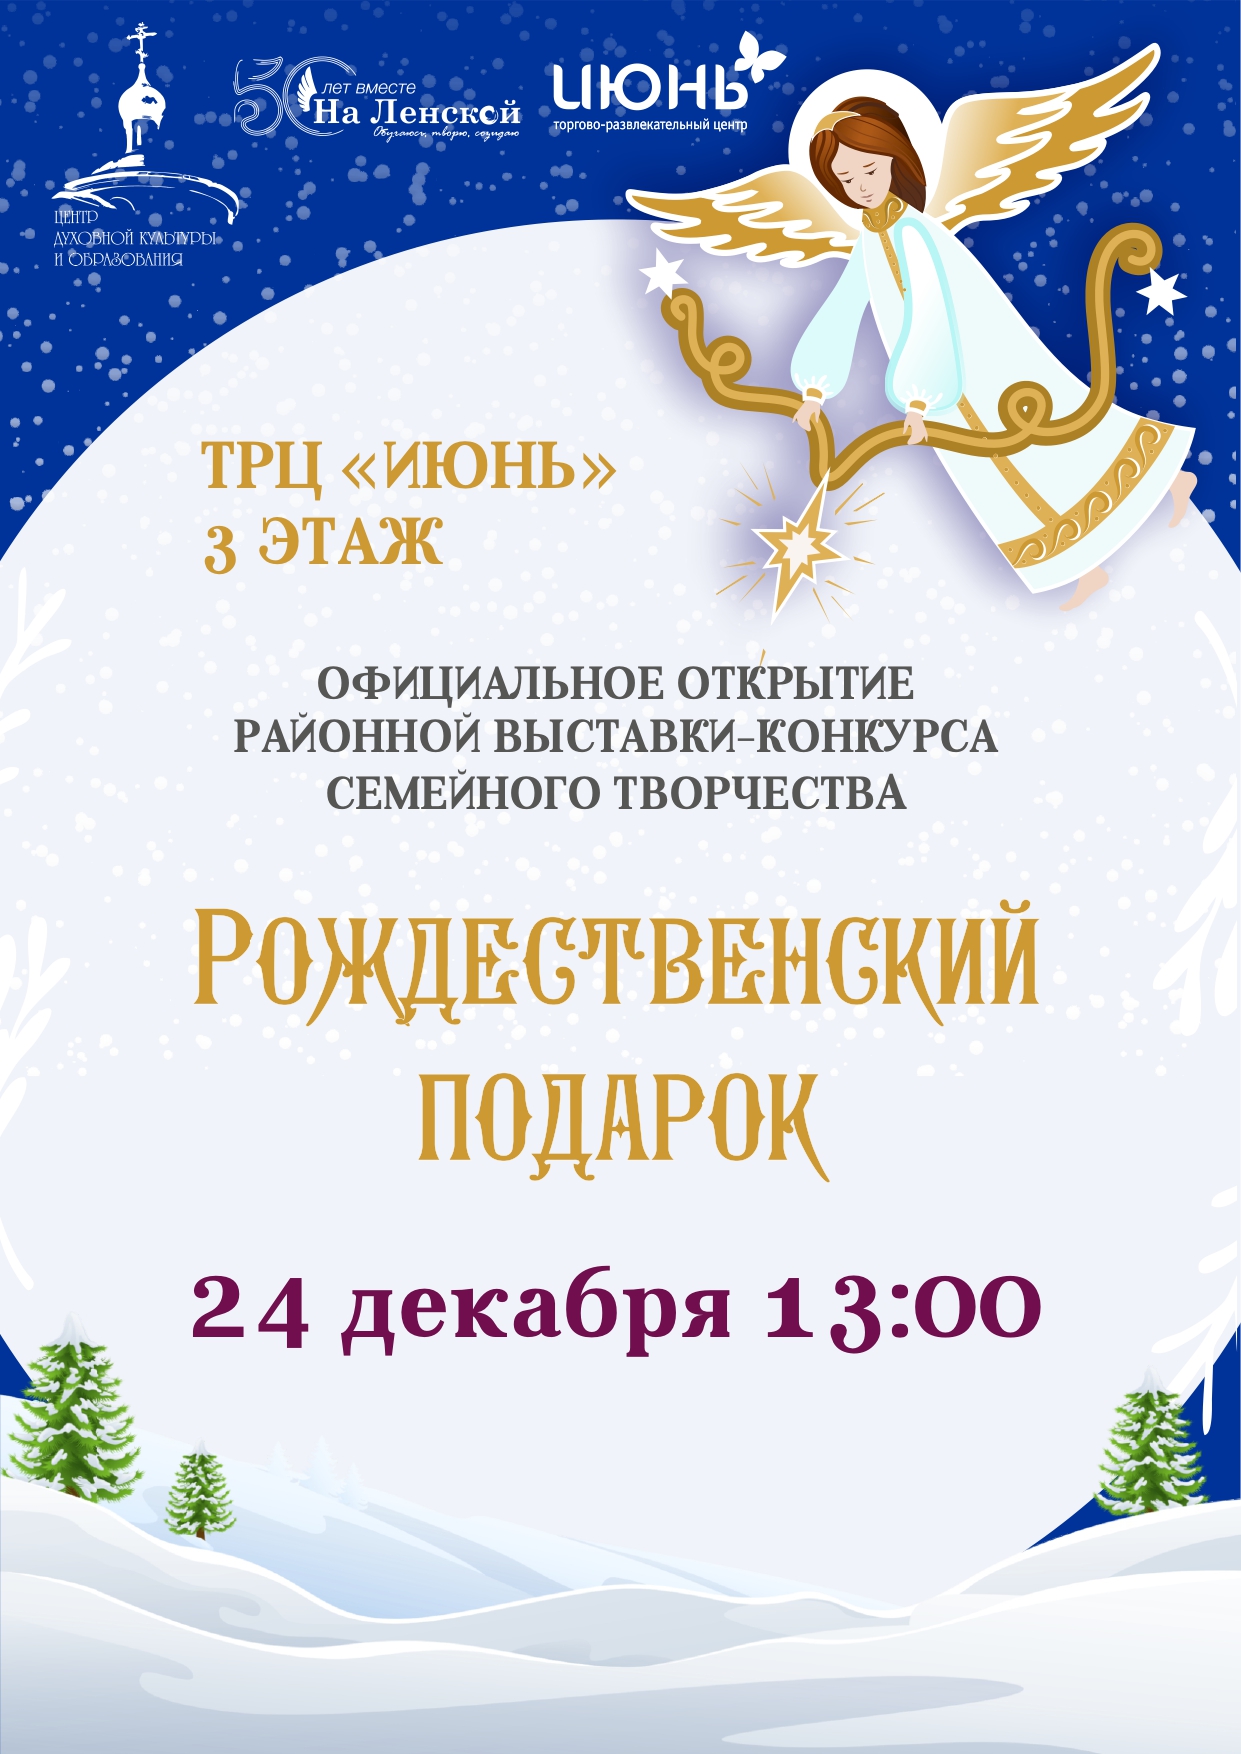 24 декабря, в 13:00, в ТРЦ «ИЮНЬ» состоится торжественная церемония открытия районной выставки семейного творчества «Рождественский подарок».